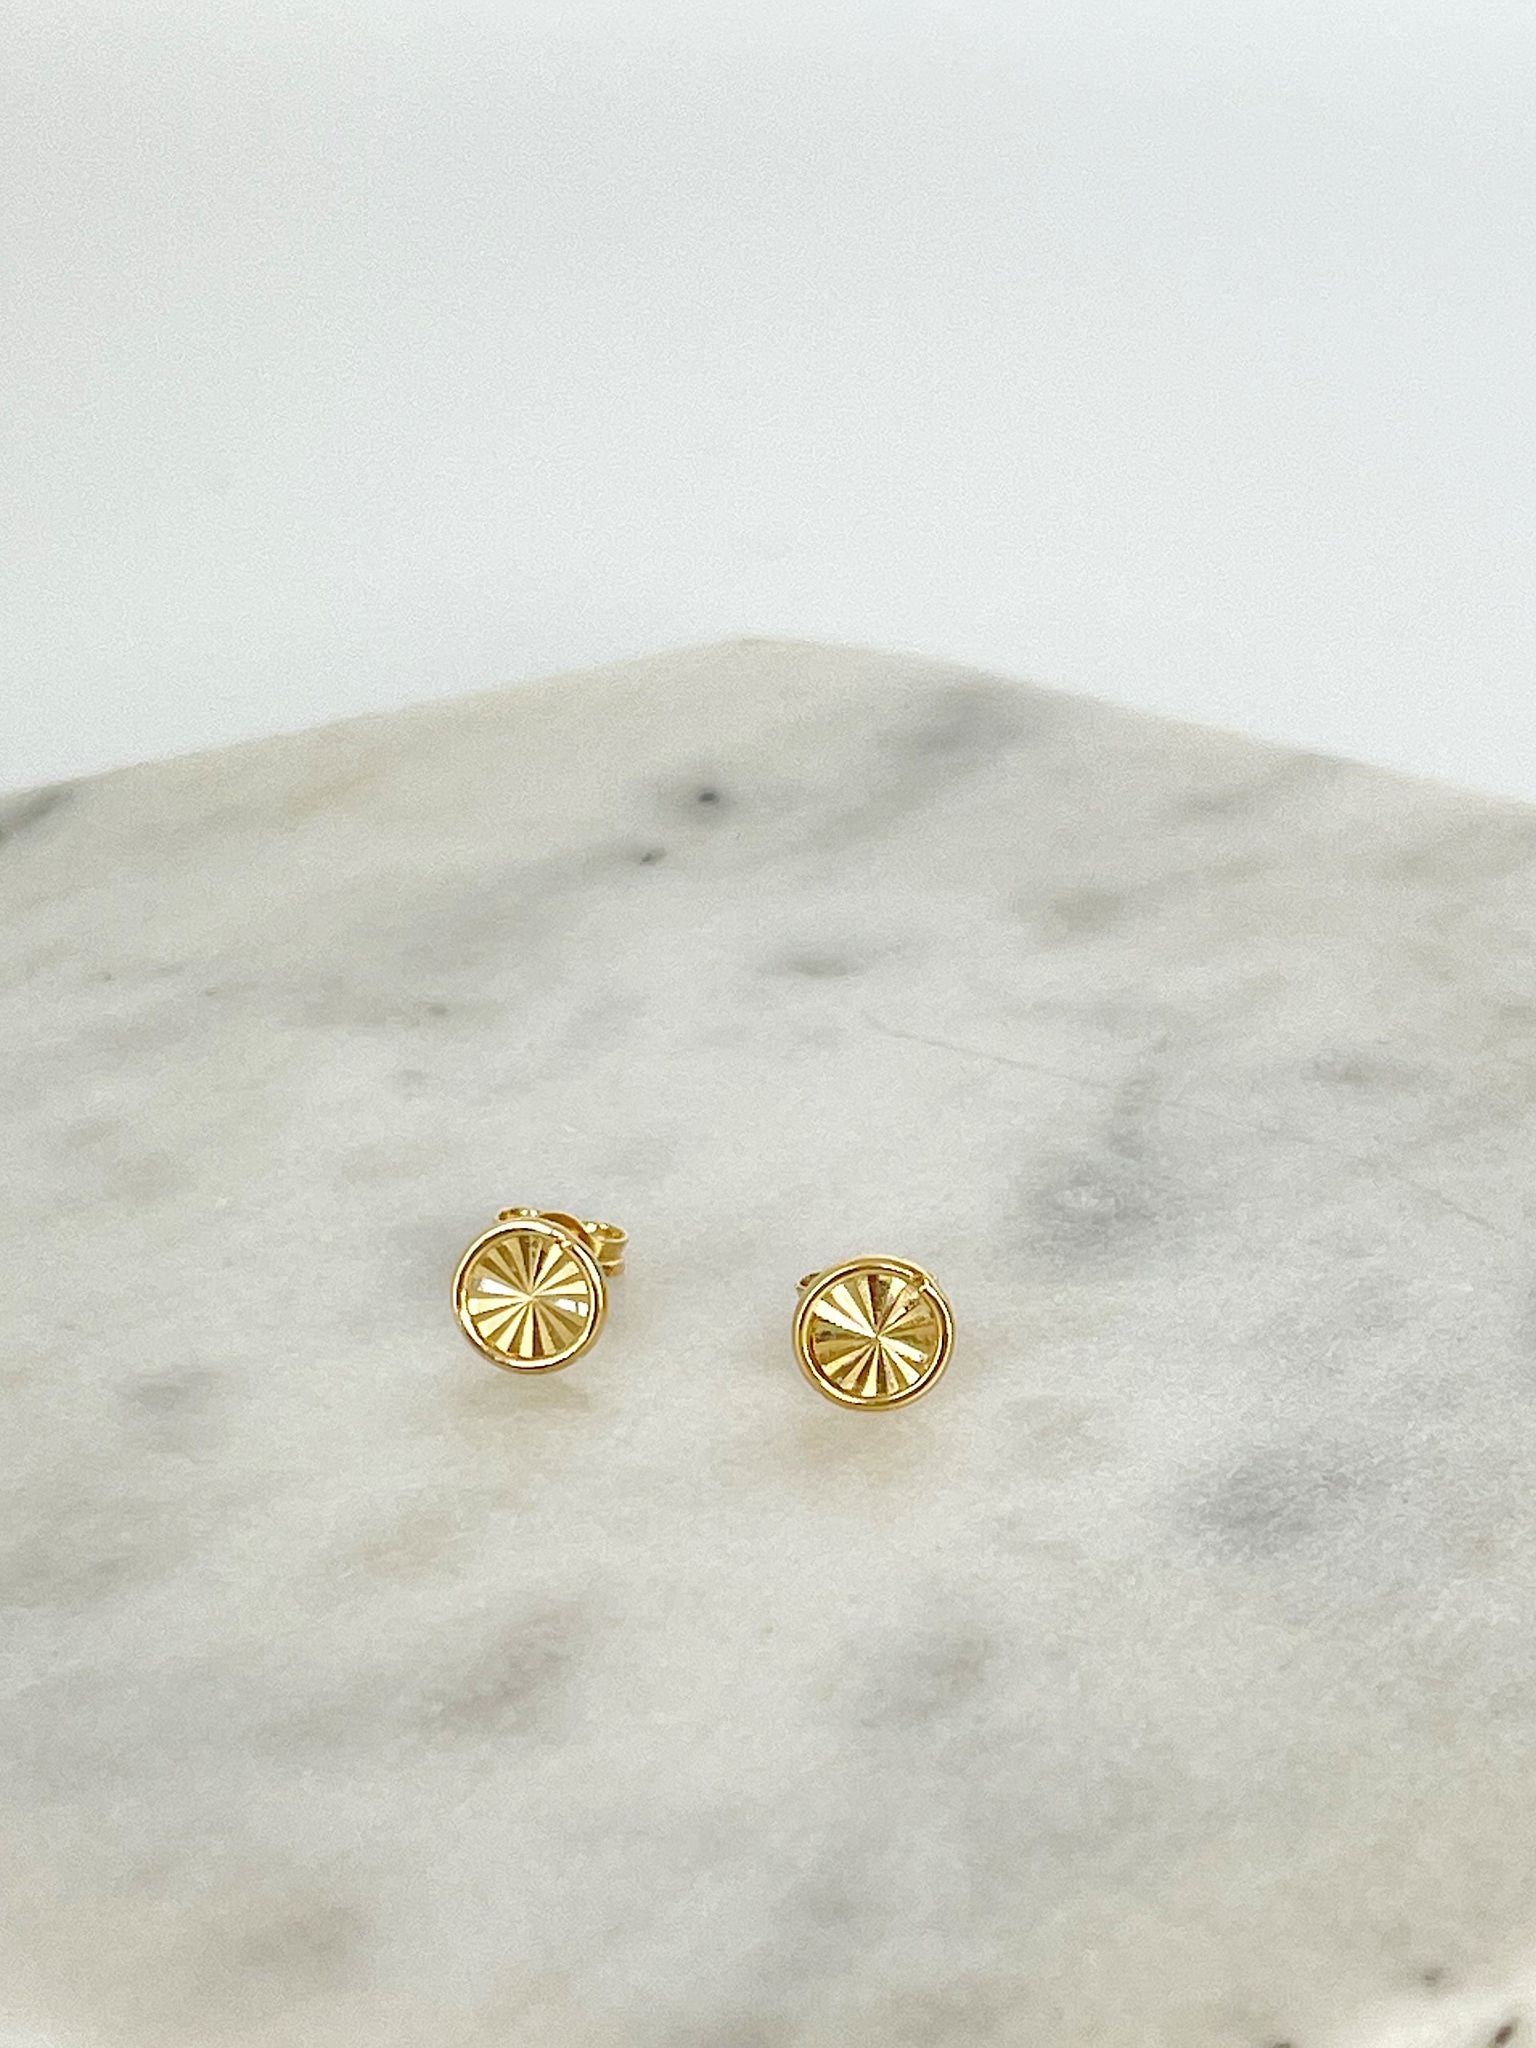 Circular gold earrings